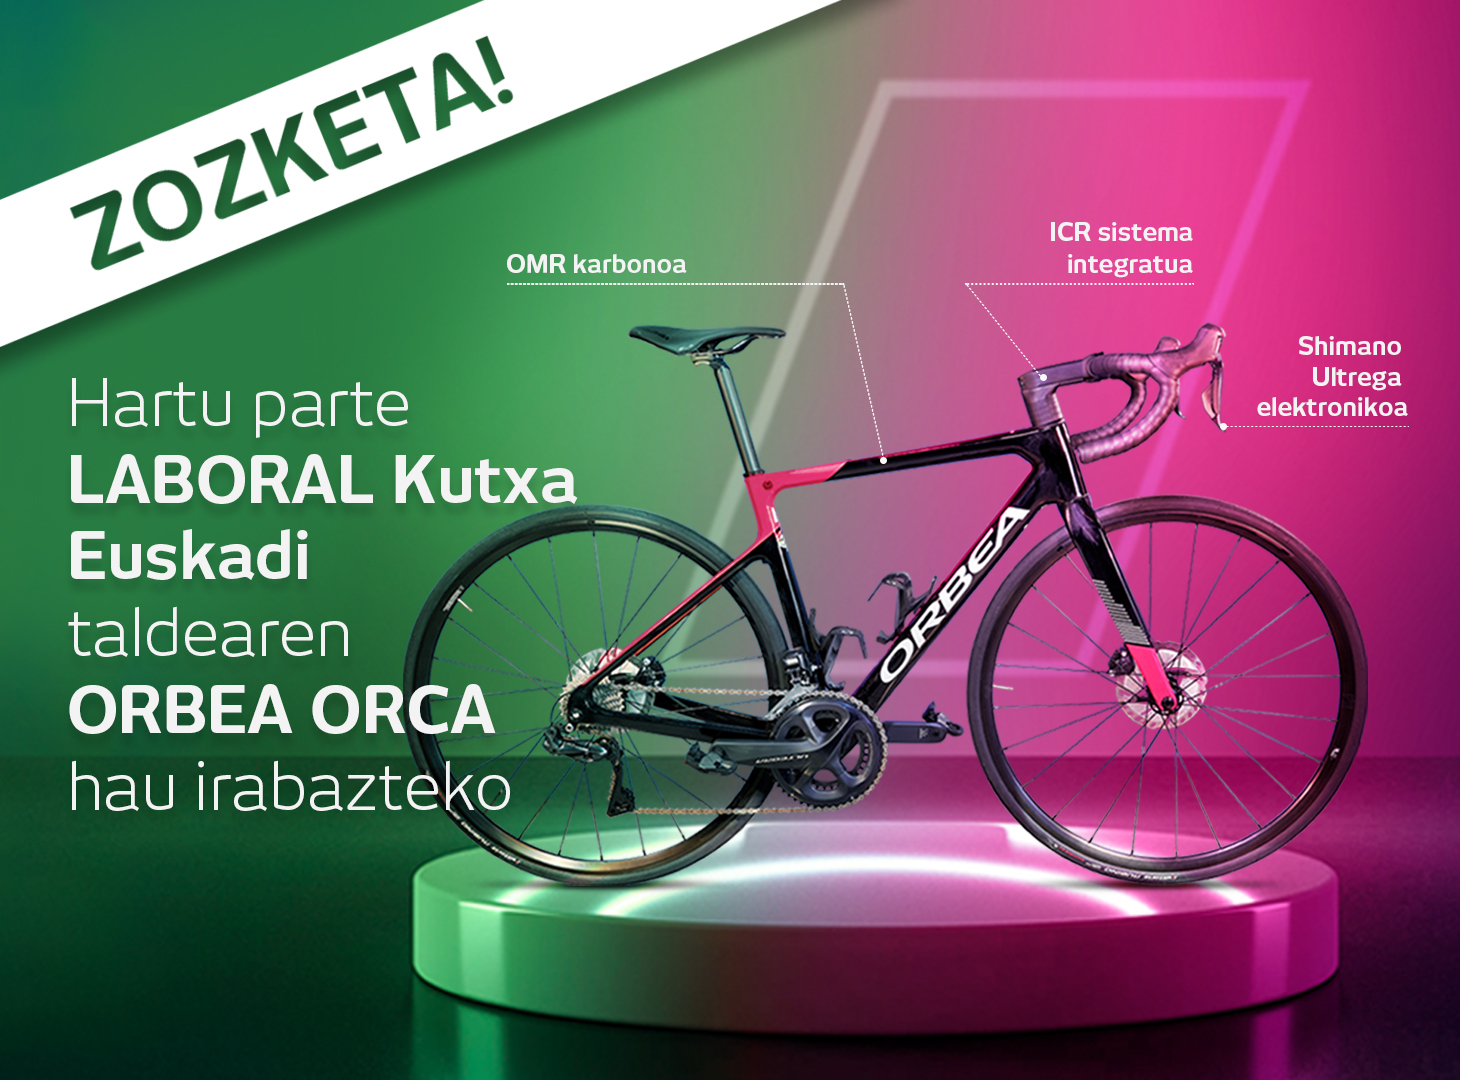 Sorteamos una bici de la Fundación Euskadi para celebrar un año lleno de éxitos